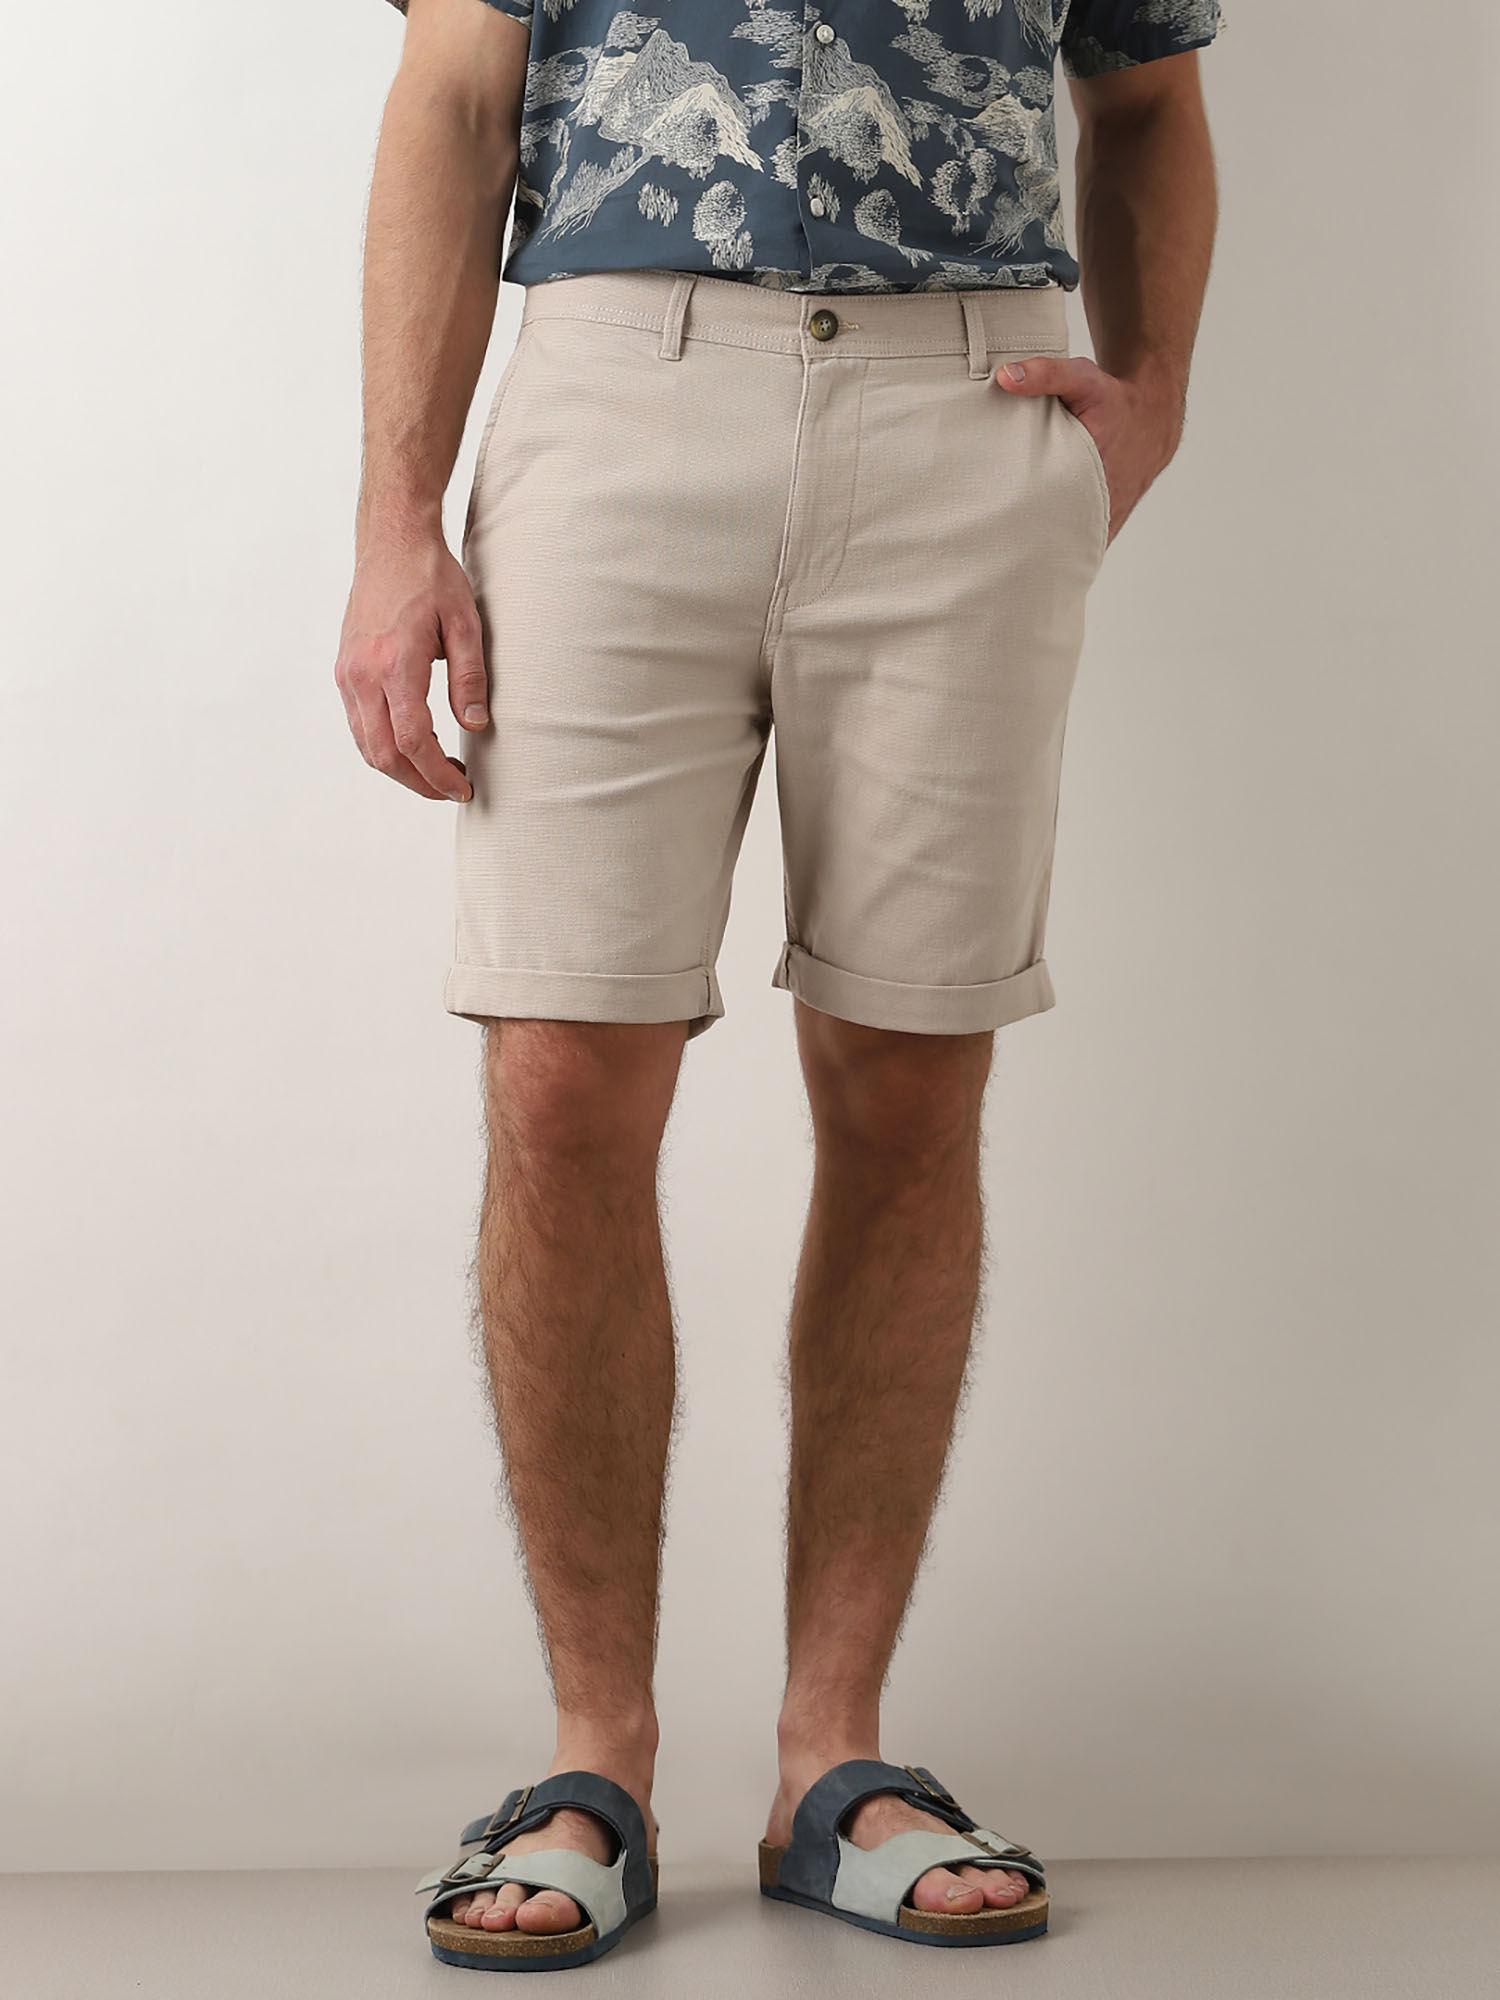 beige mid rise cotton shorts